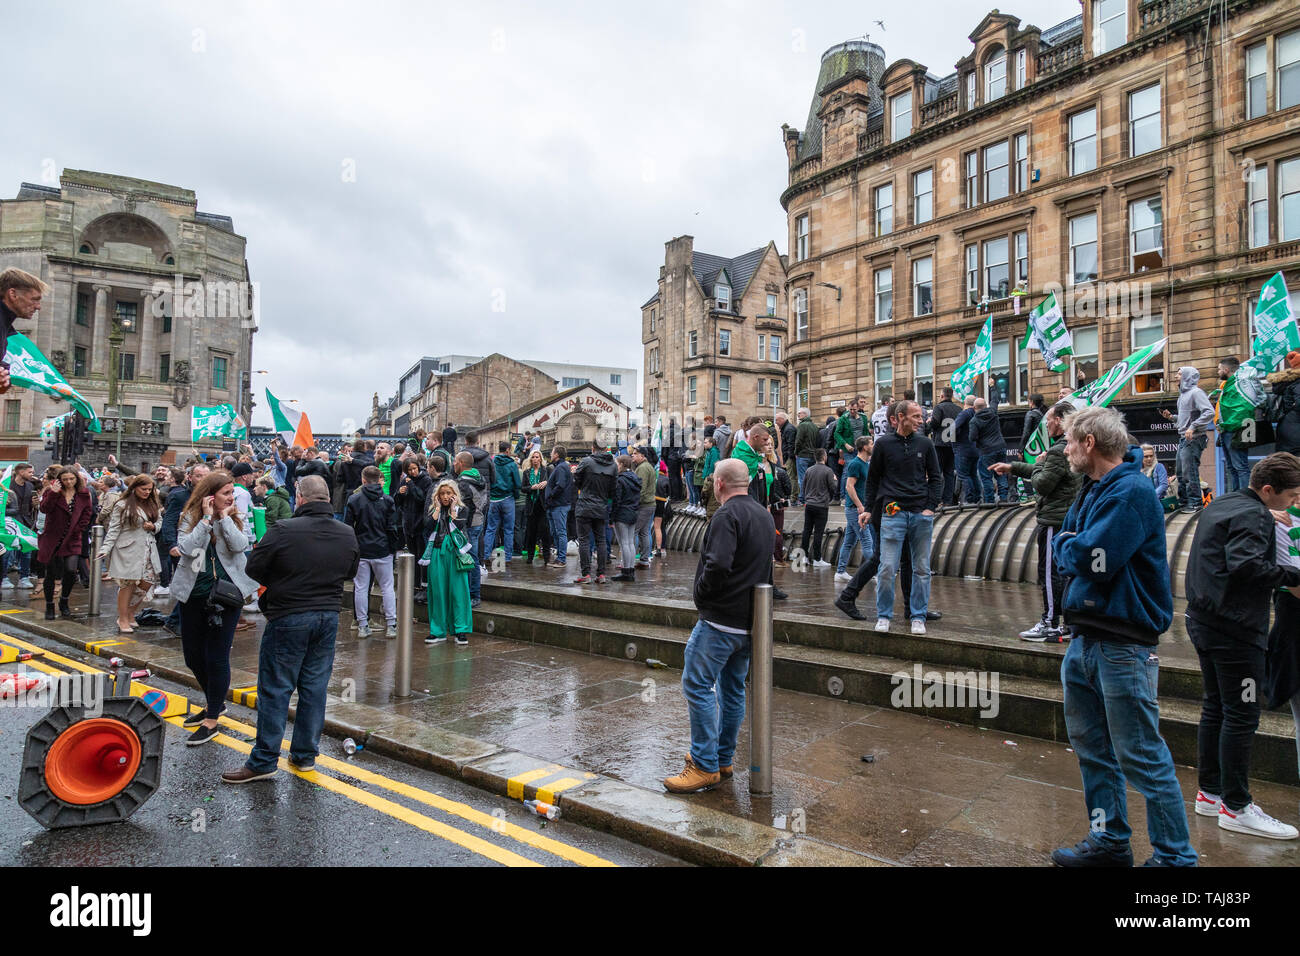 Glasgow Celtic Football club gagner la Coupe d'Écosse contre coeur mais l'open top bus parade organisée par la suite est annulé au milieu des craintes de sécurité.Des milliers de fans se sont réunis pendant près de deux heures à l'Saltmarket et Glasgow Cross en prévision de son arrivée. Banque D'Images